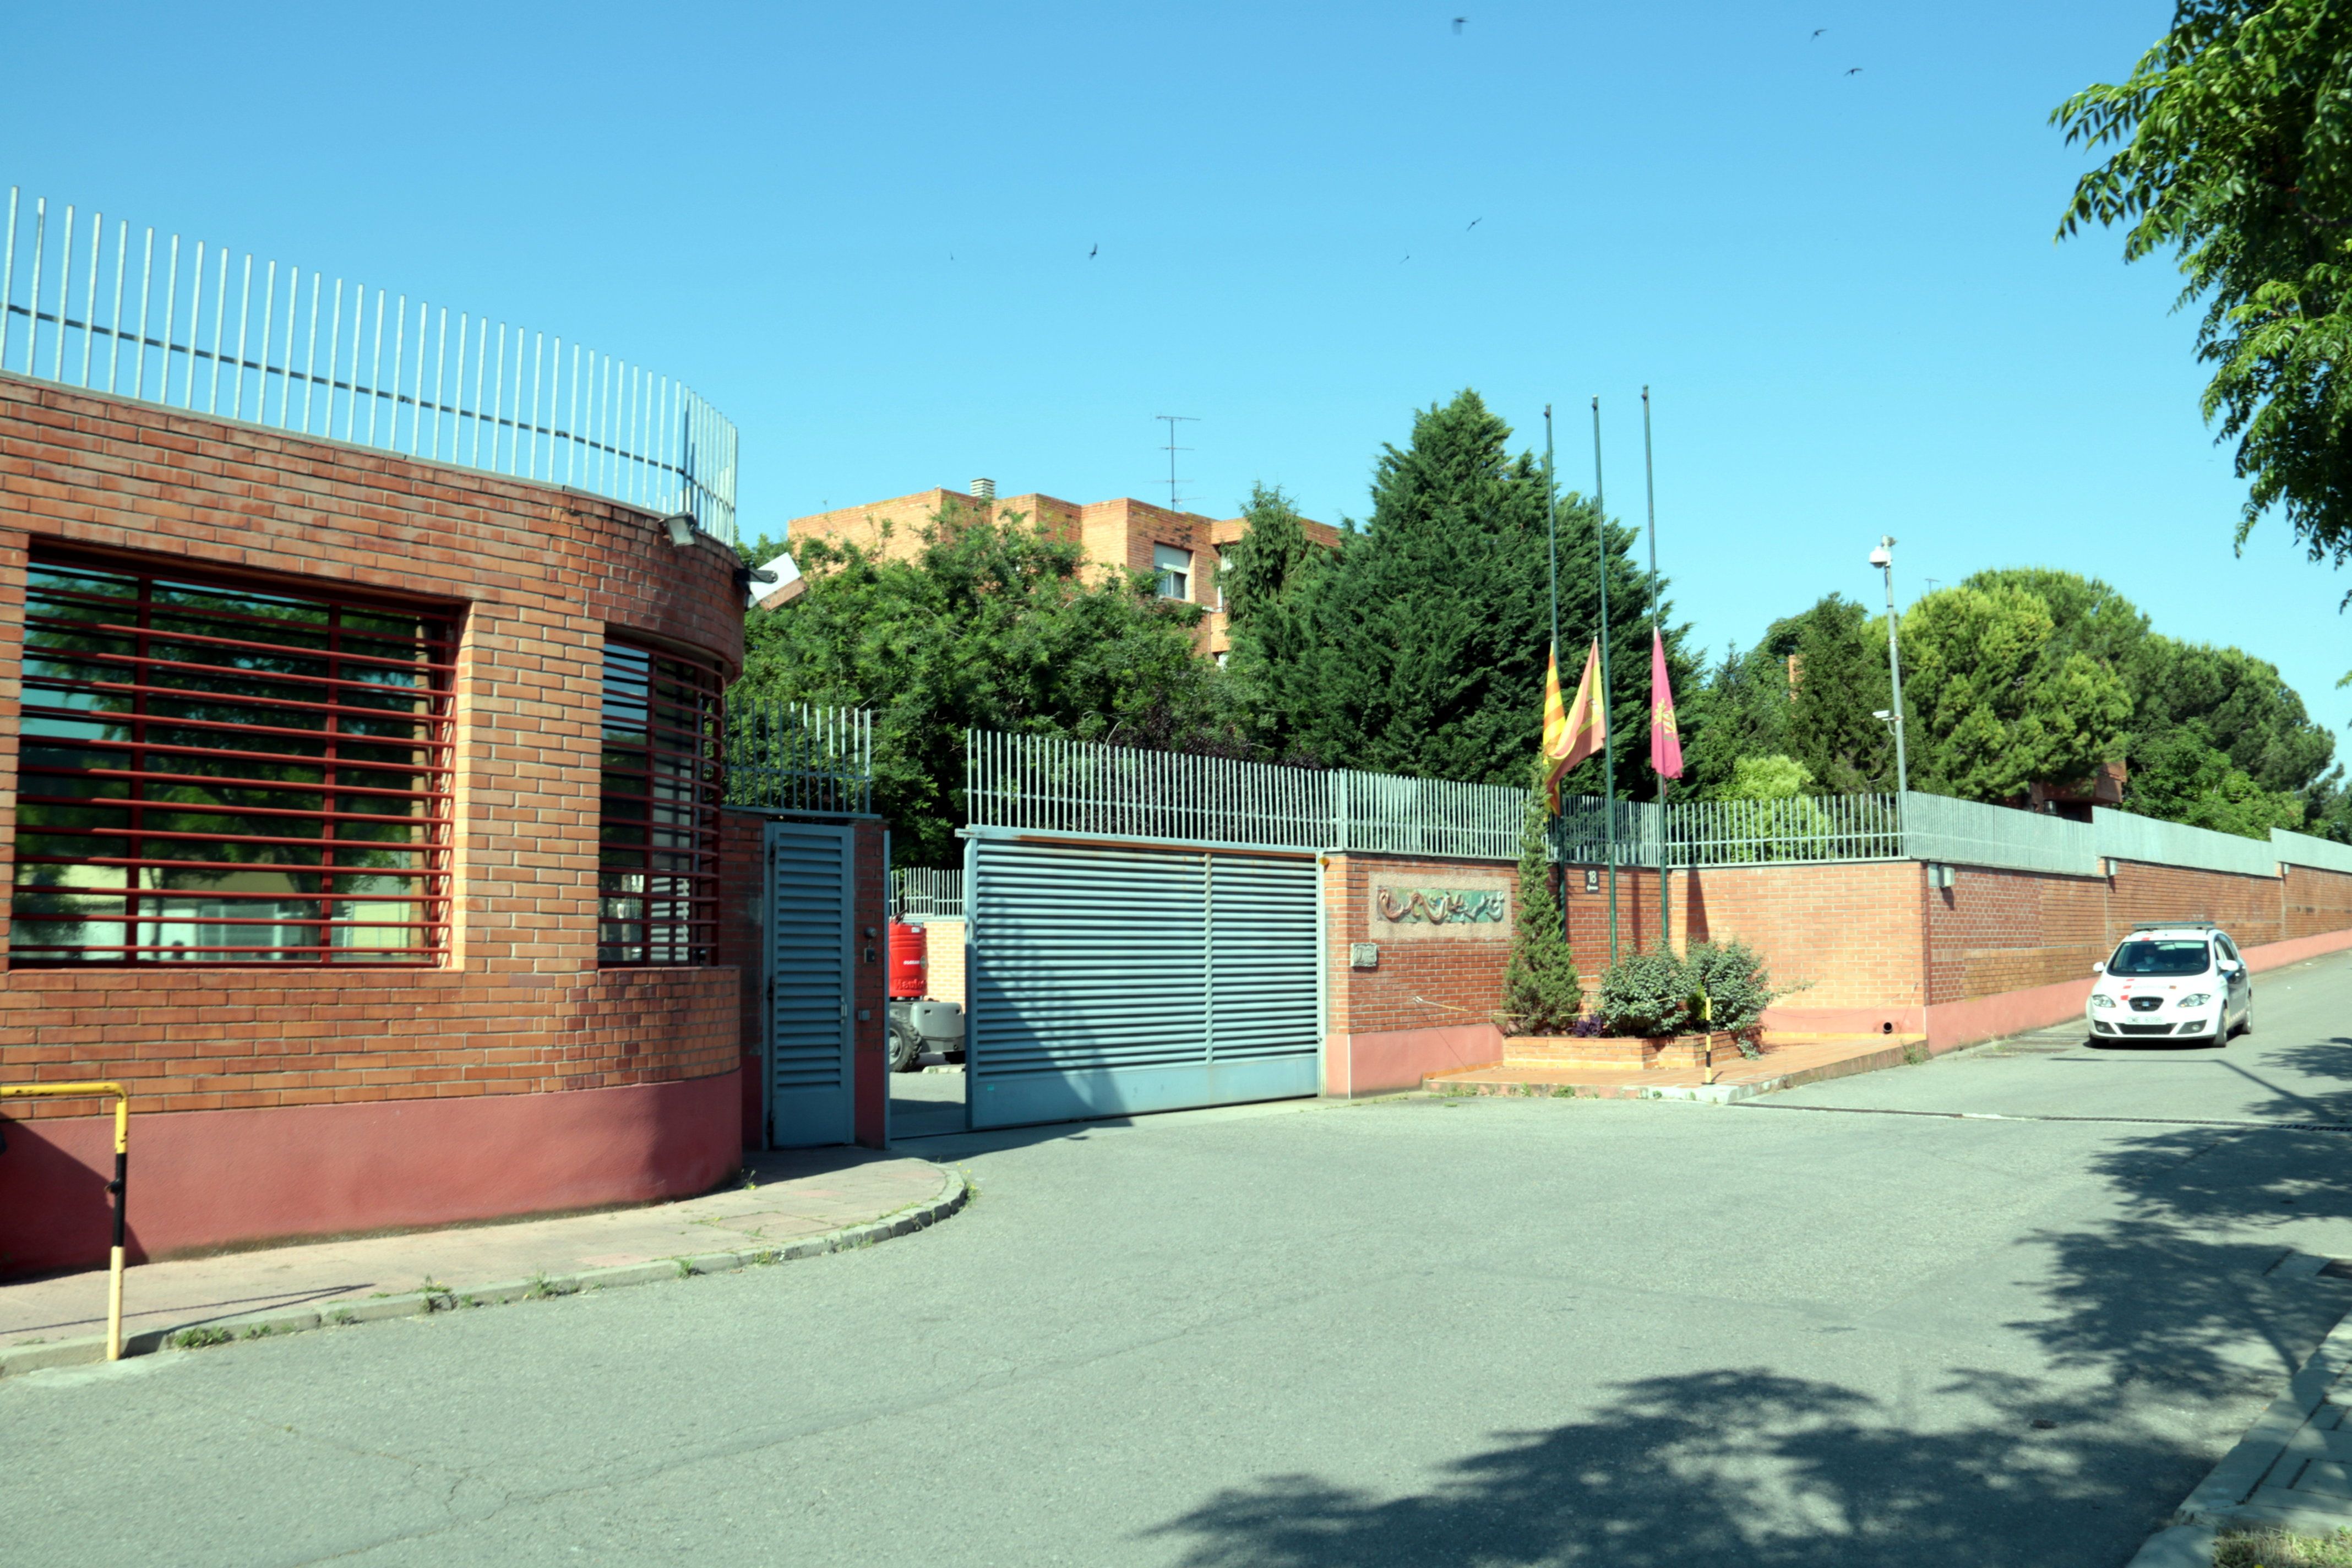 Presó de Lleida